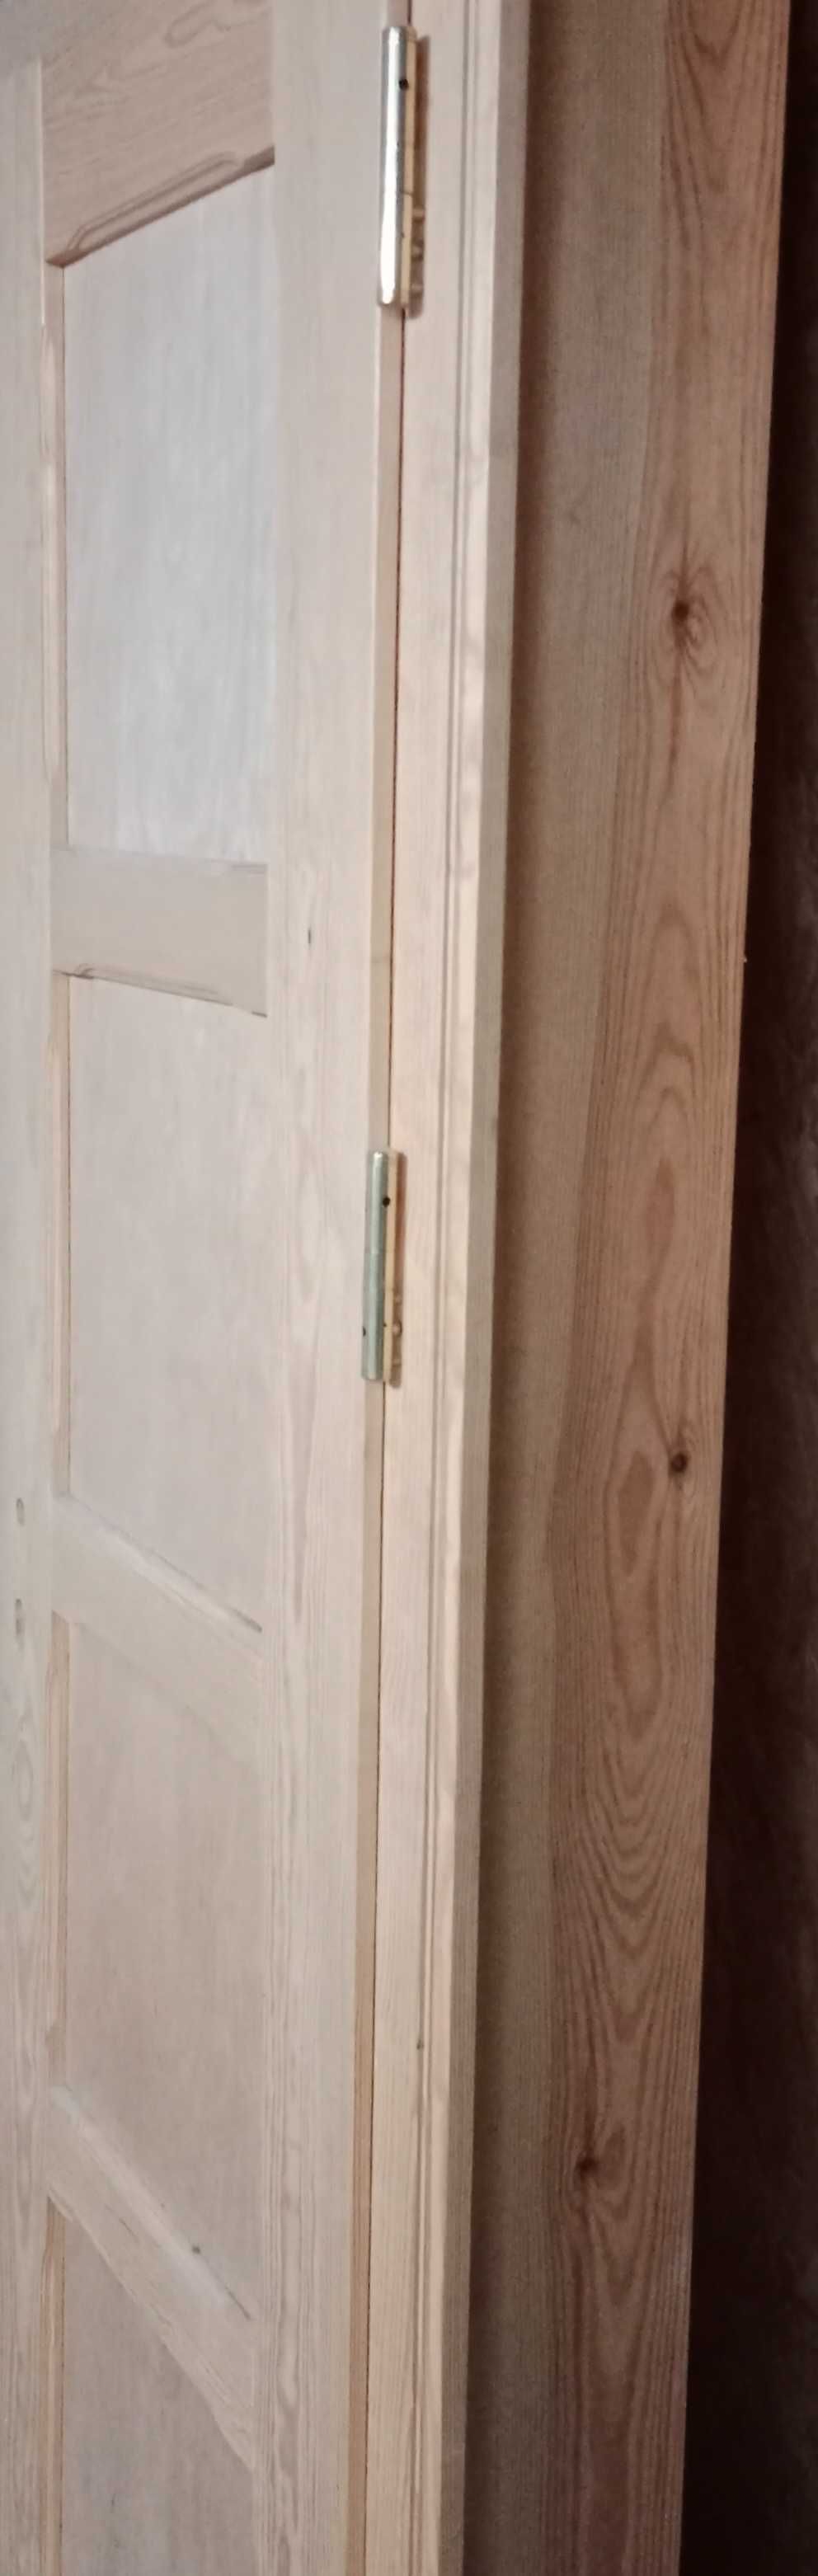 Drzwi drewniane 60 z ościeżnica